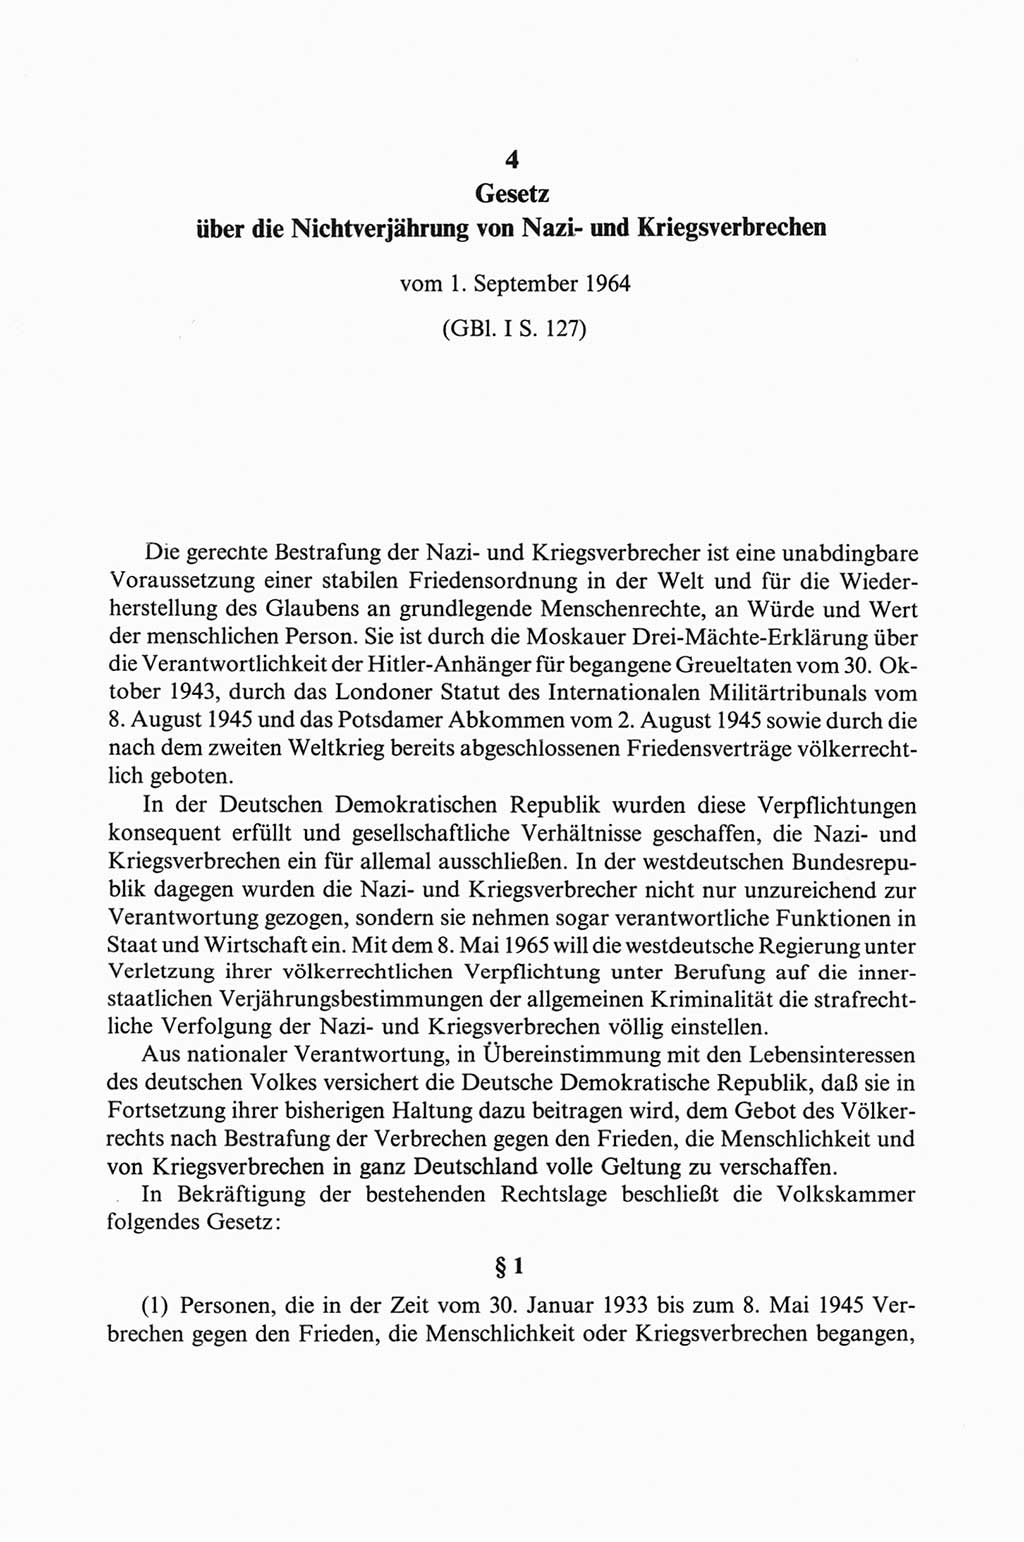 Strafgesetzbuch (StGB) der Deutschen Demokratischen Republik (DDR) und angrenzende Gesetze und Bestimmungen 1968, Seite 138 (StGB Ges. Best. DDR 1968, S. 138)